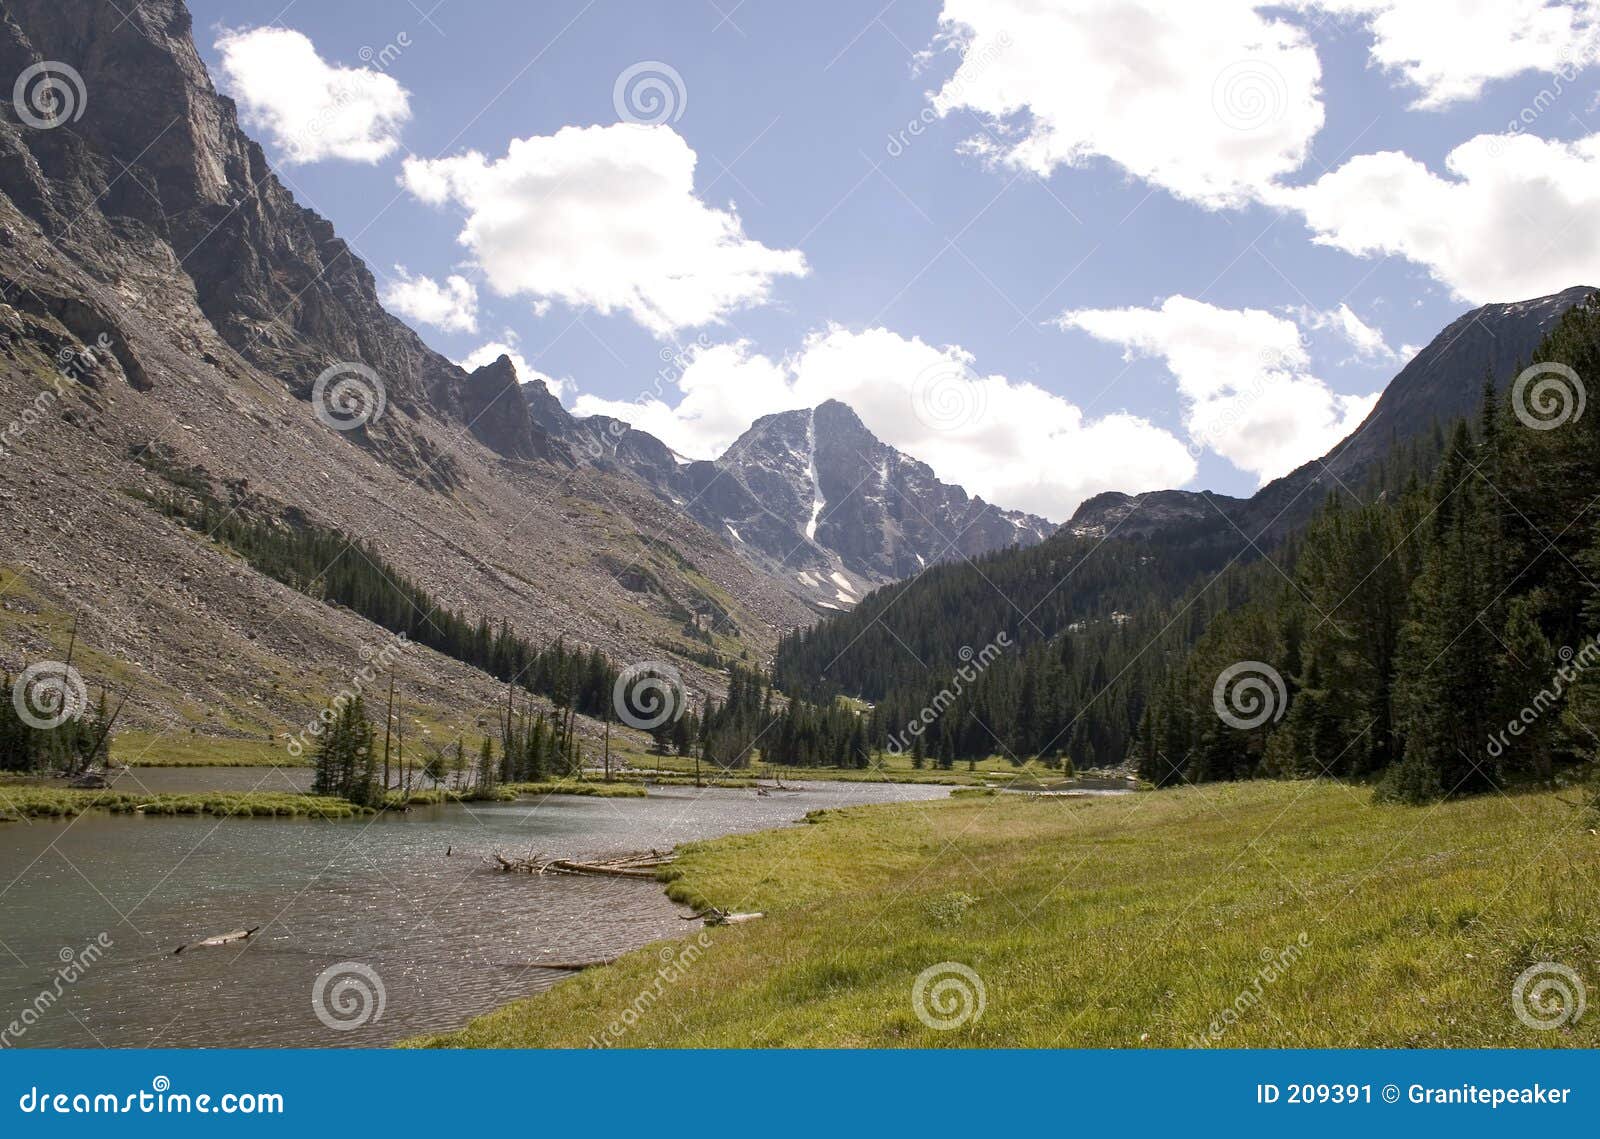 whitetail peak - montana